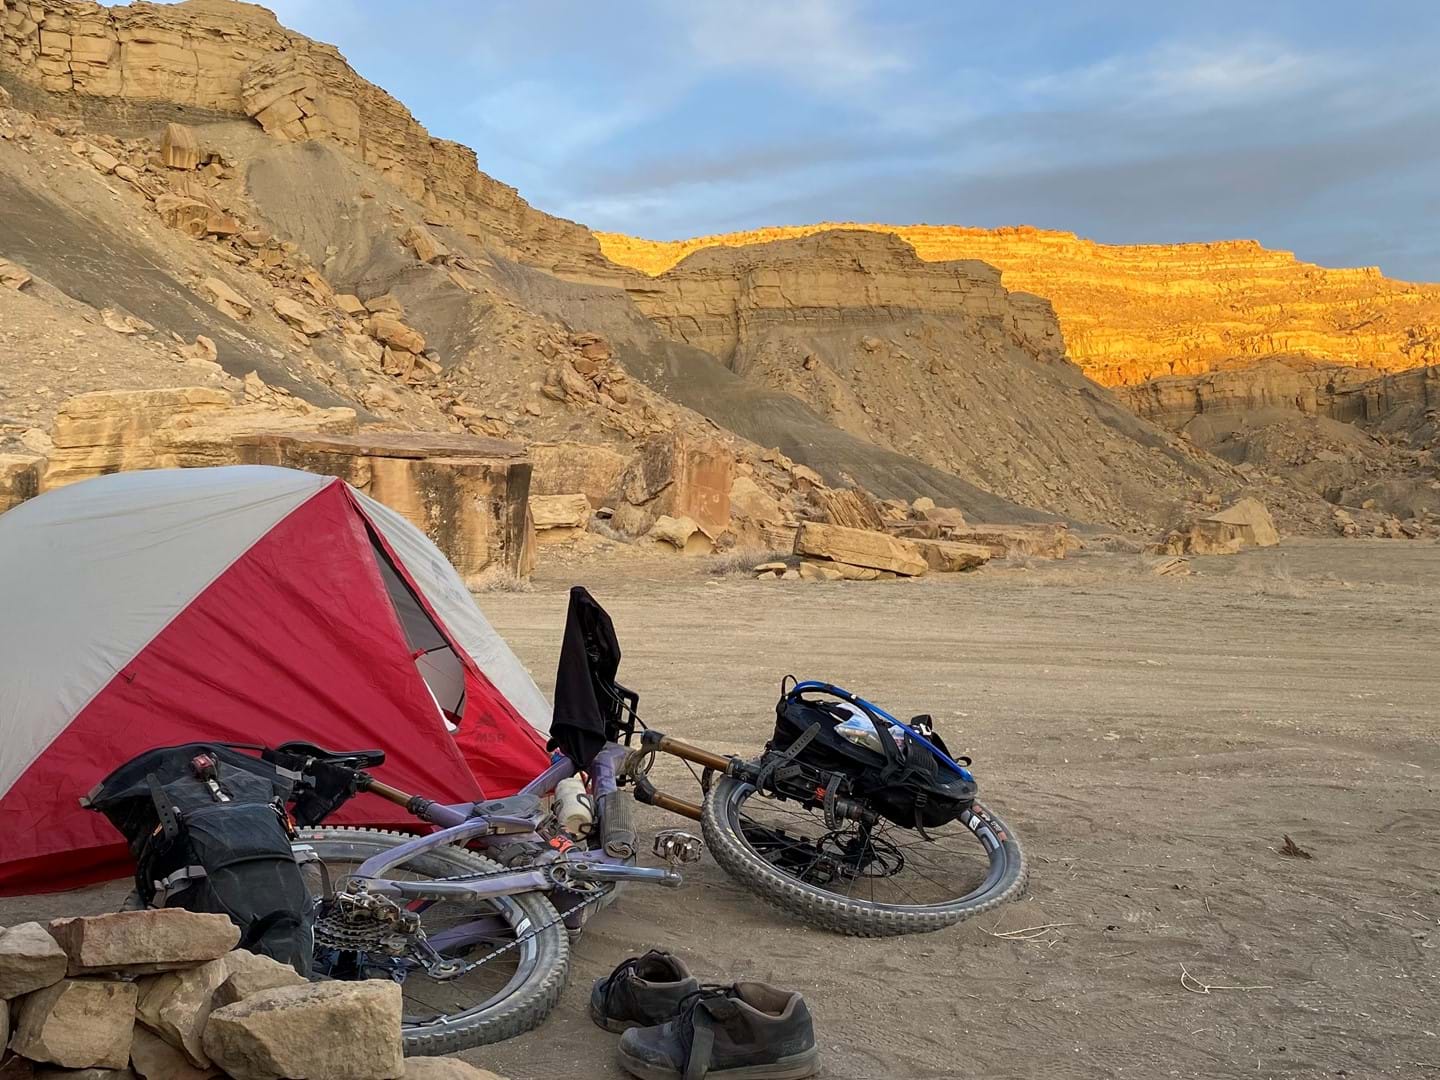 Bikepacking in the morning in the desert